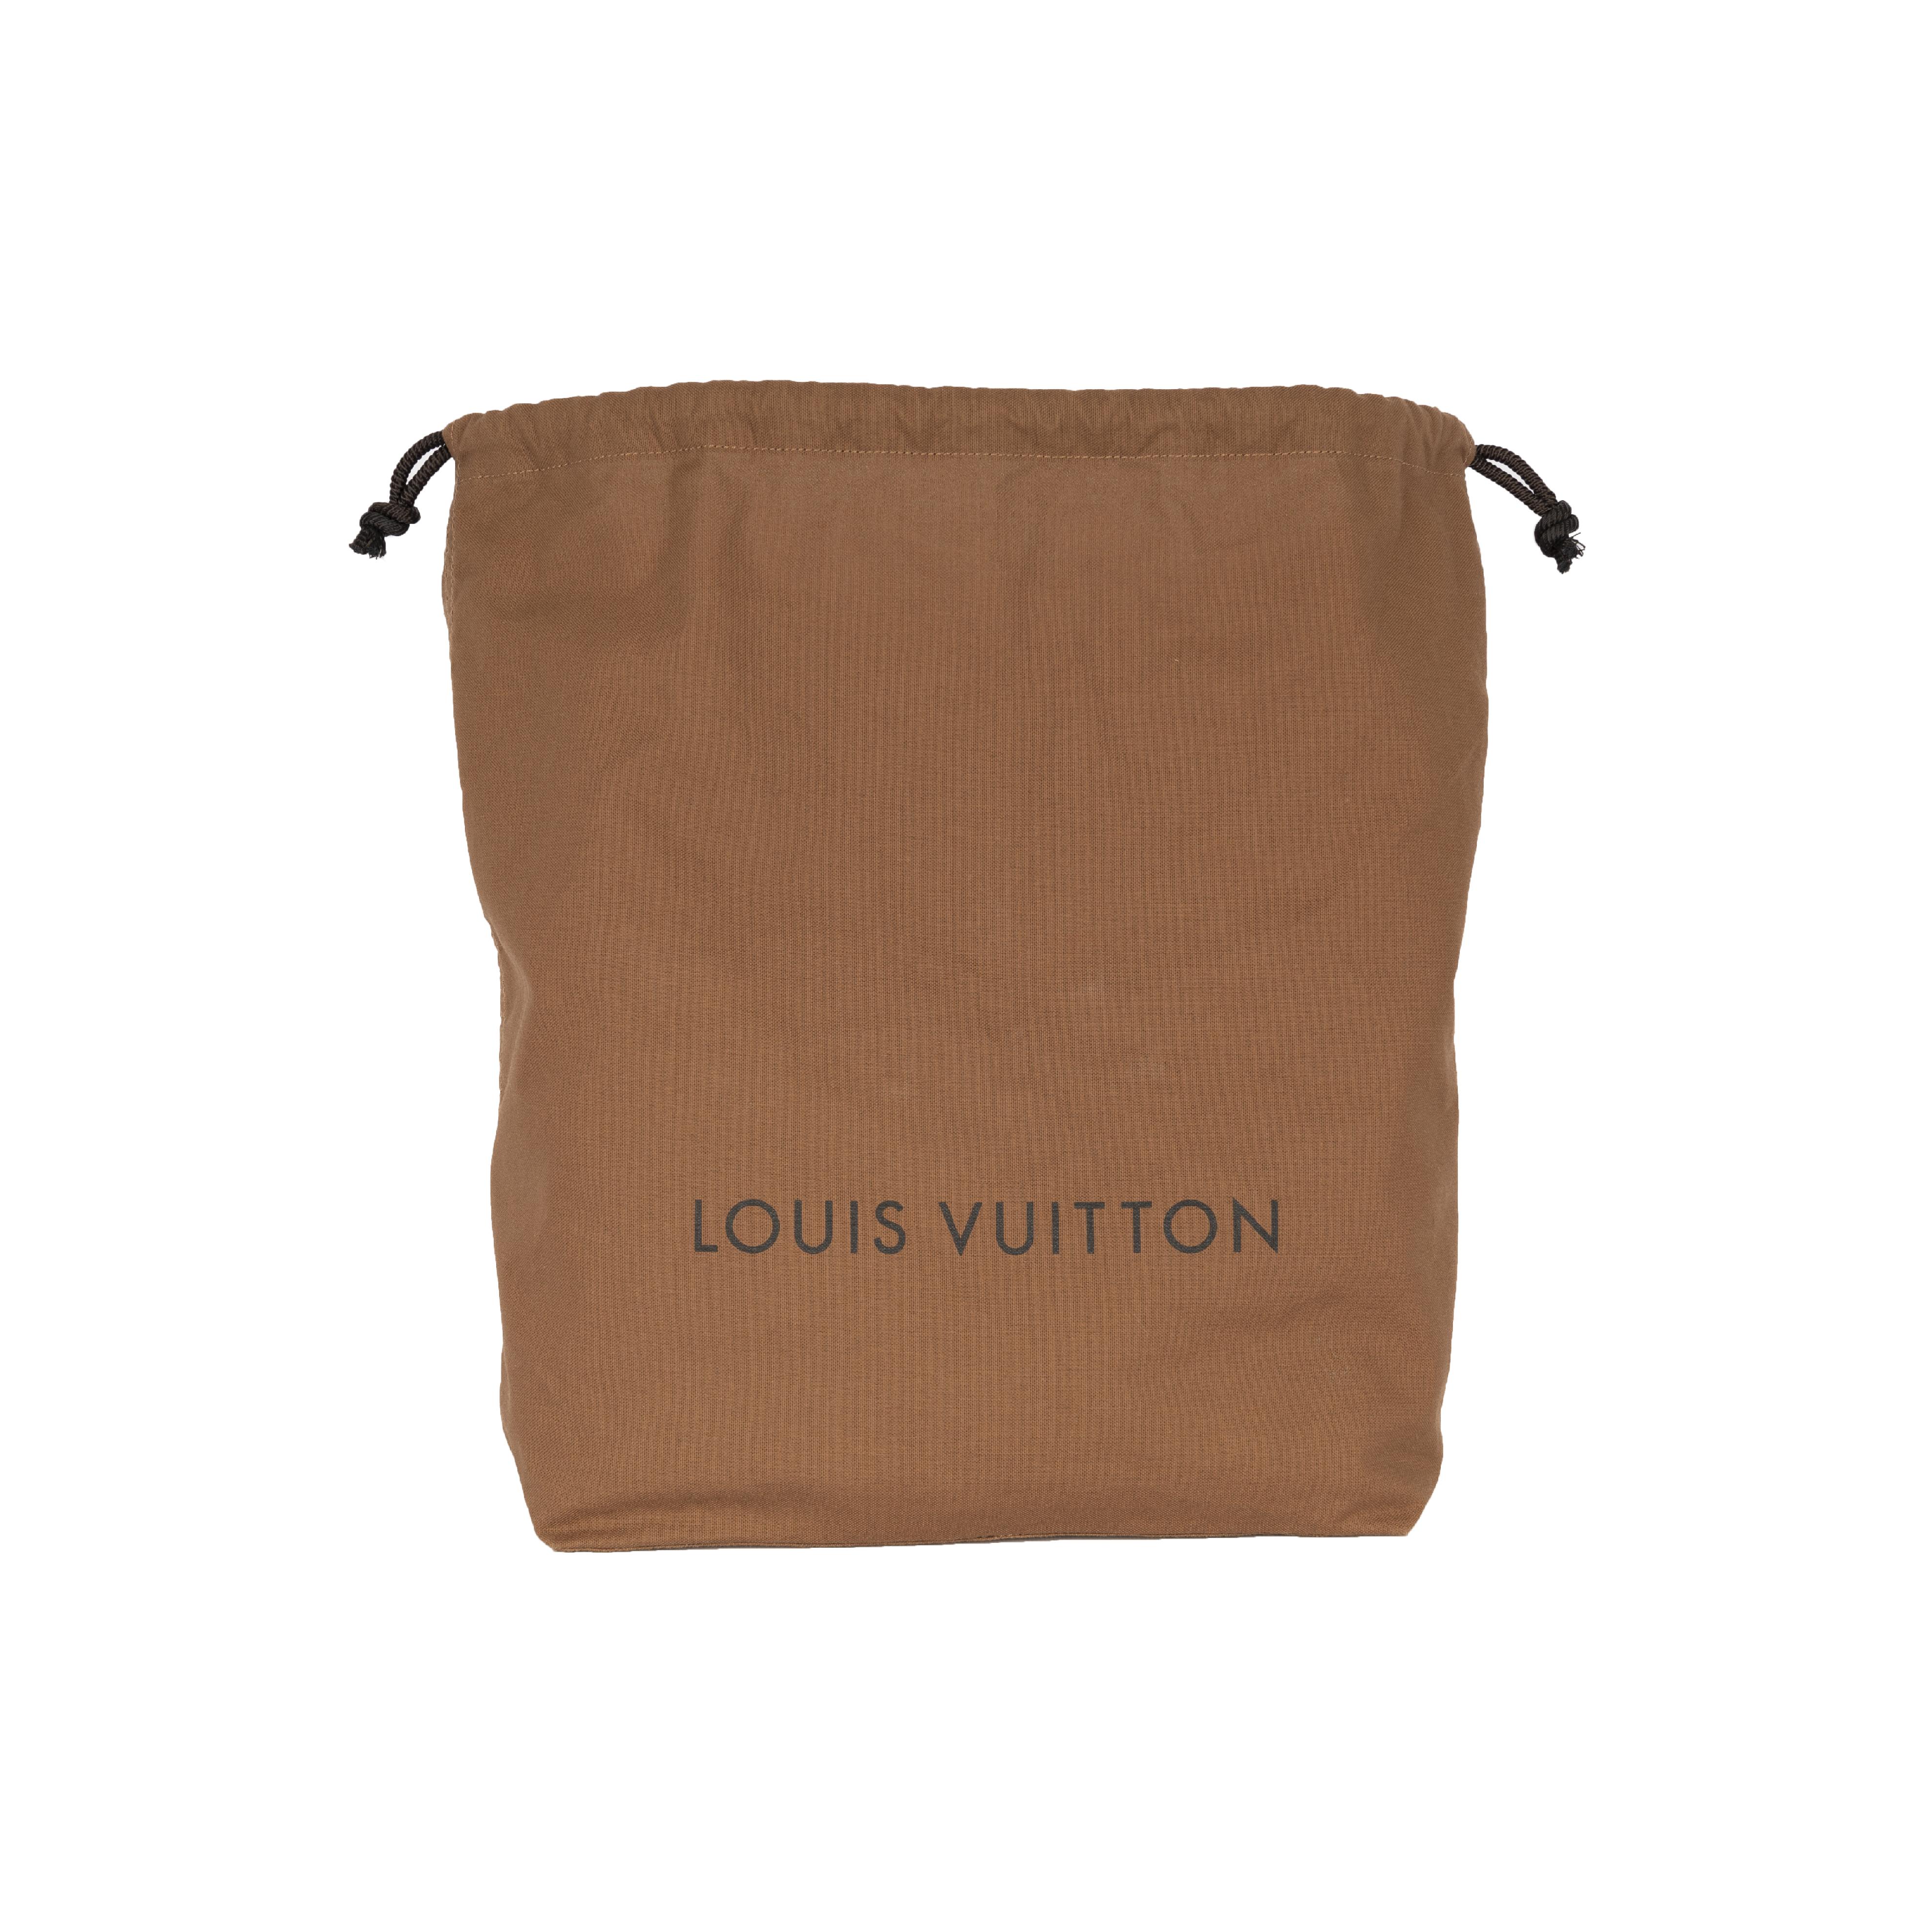 Louis Vuitton x Comme des Garçons Burned Holes Monogram Tote bag- '10s For Sale 2